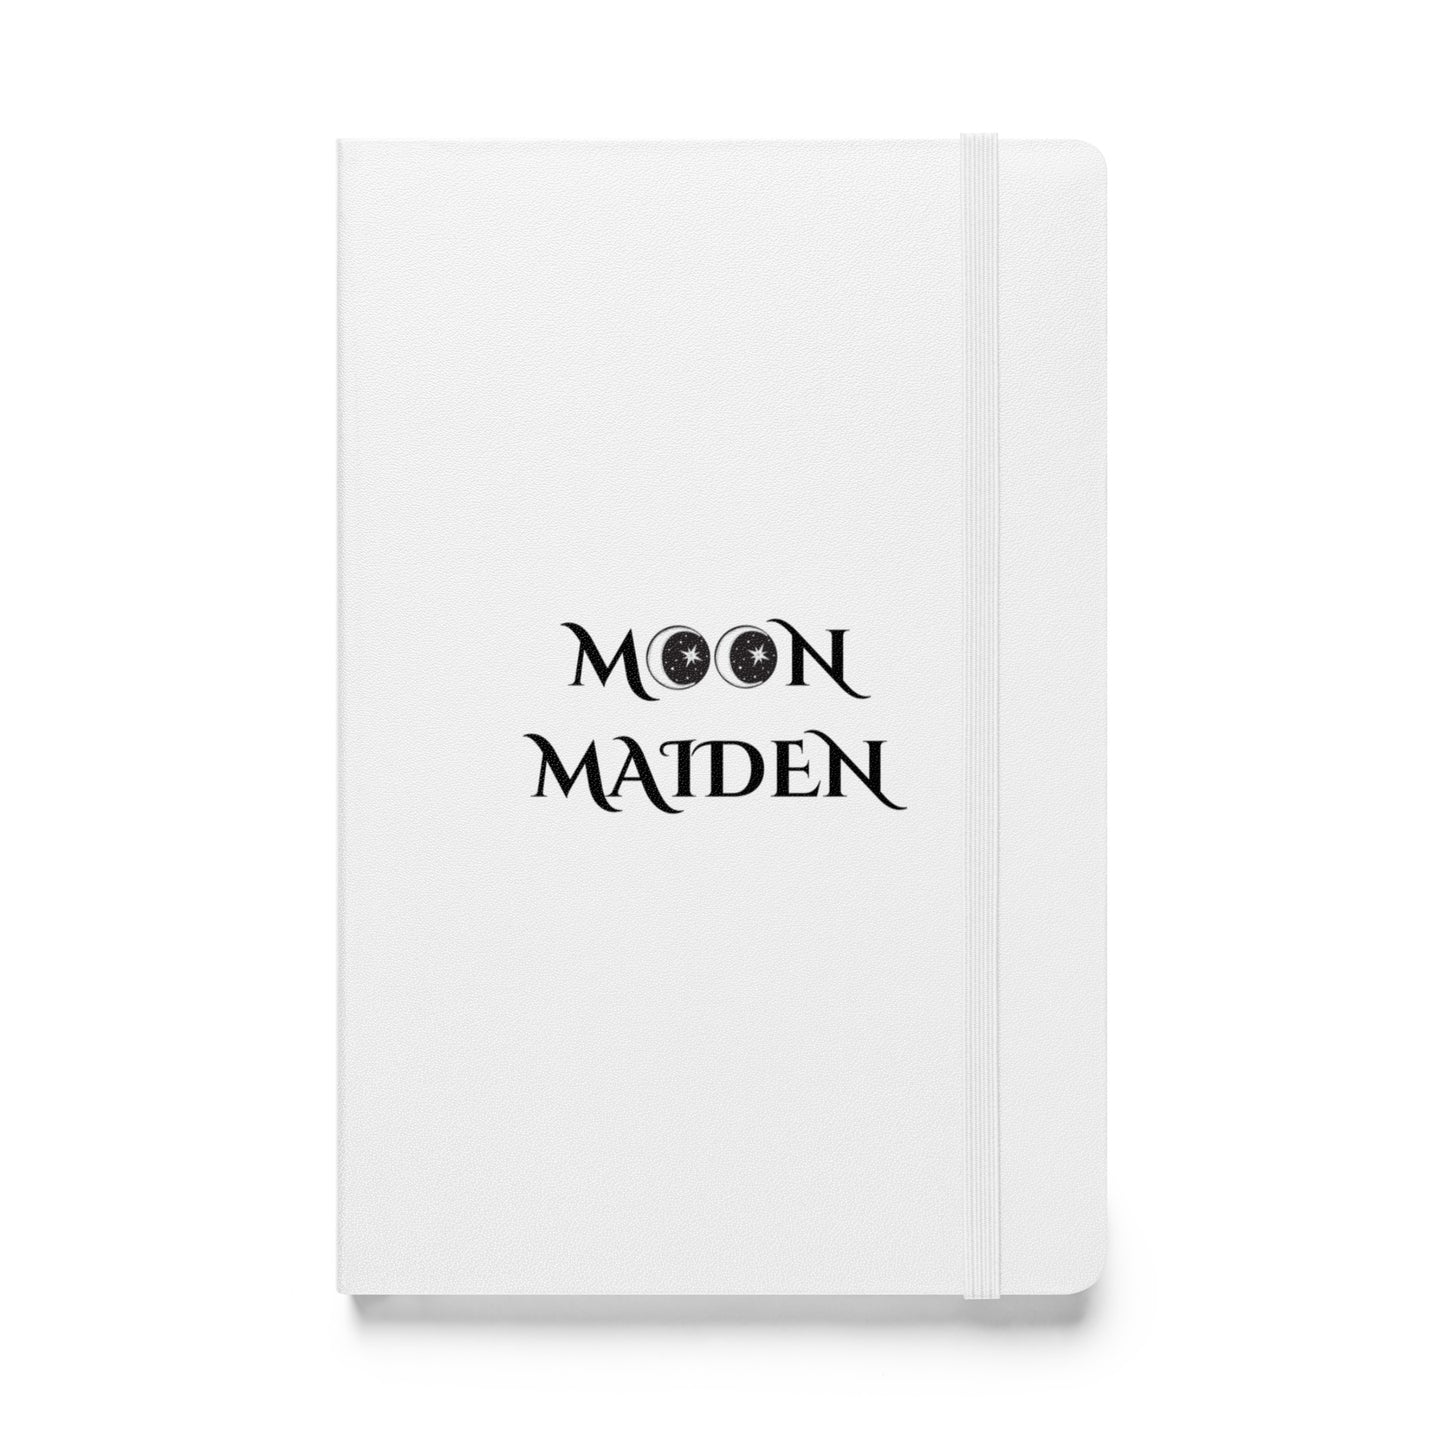 MOON MAIDEN White Hardcover bound notebook